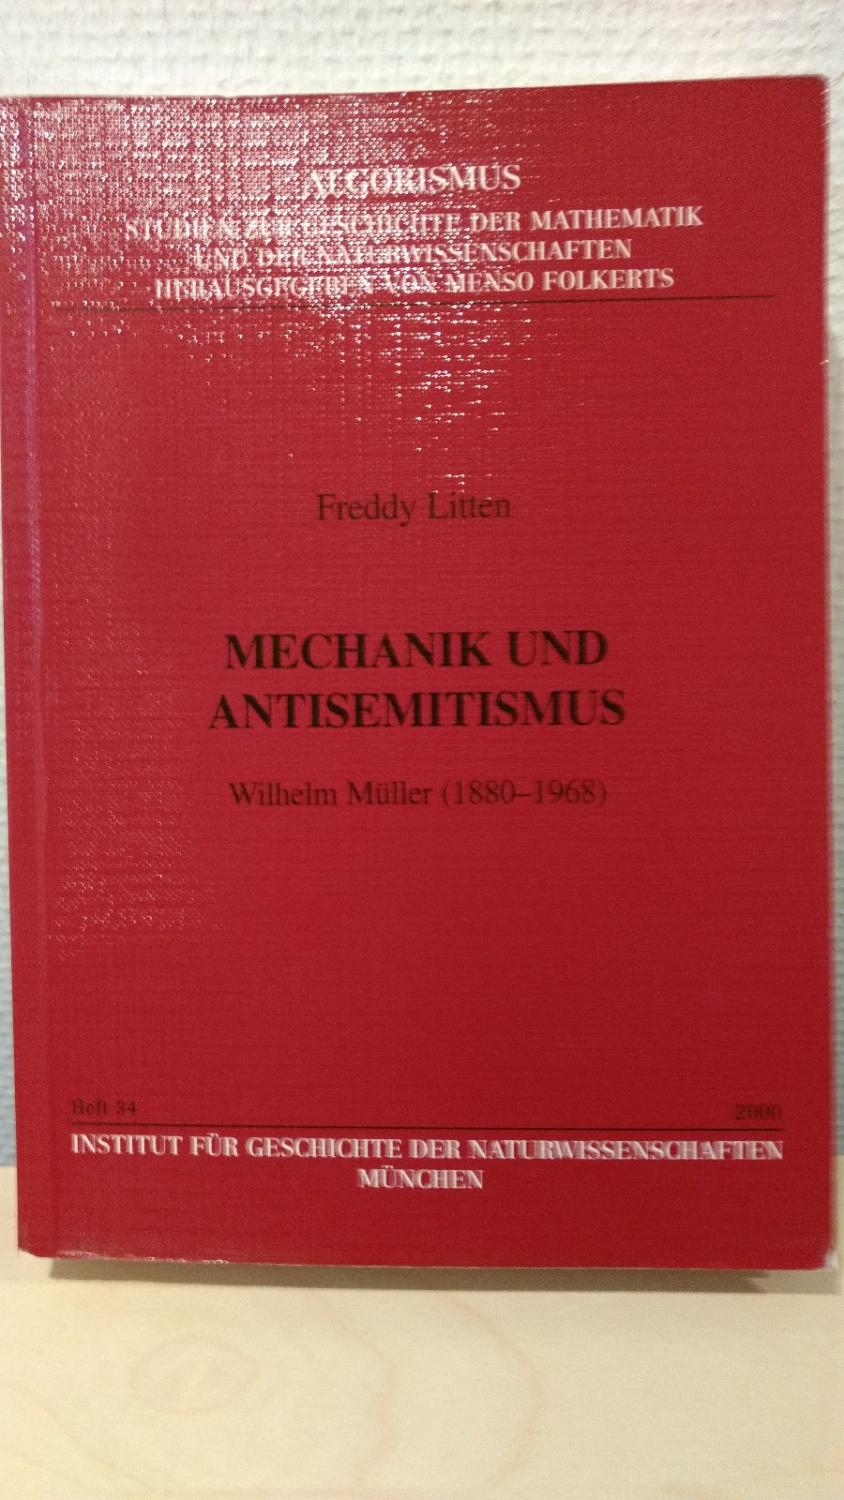 Mechanik und Antisemitismus - Wilhelm Müller (1880-1968)